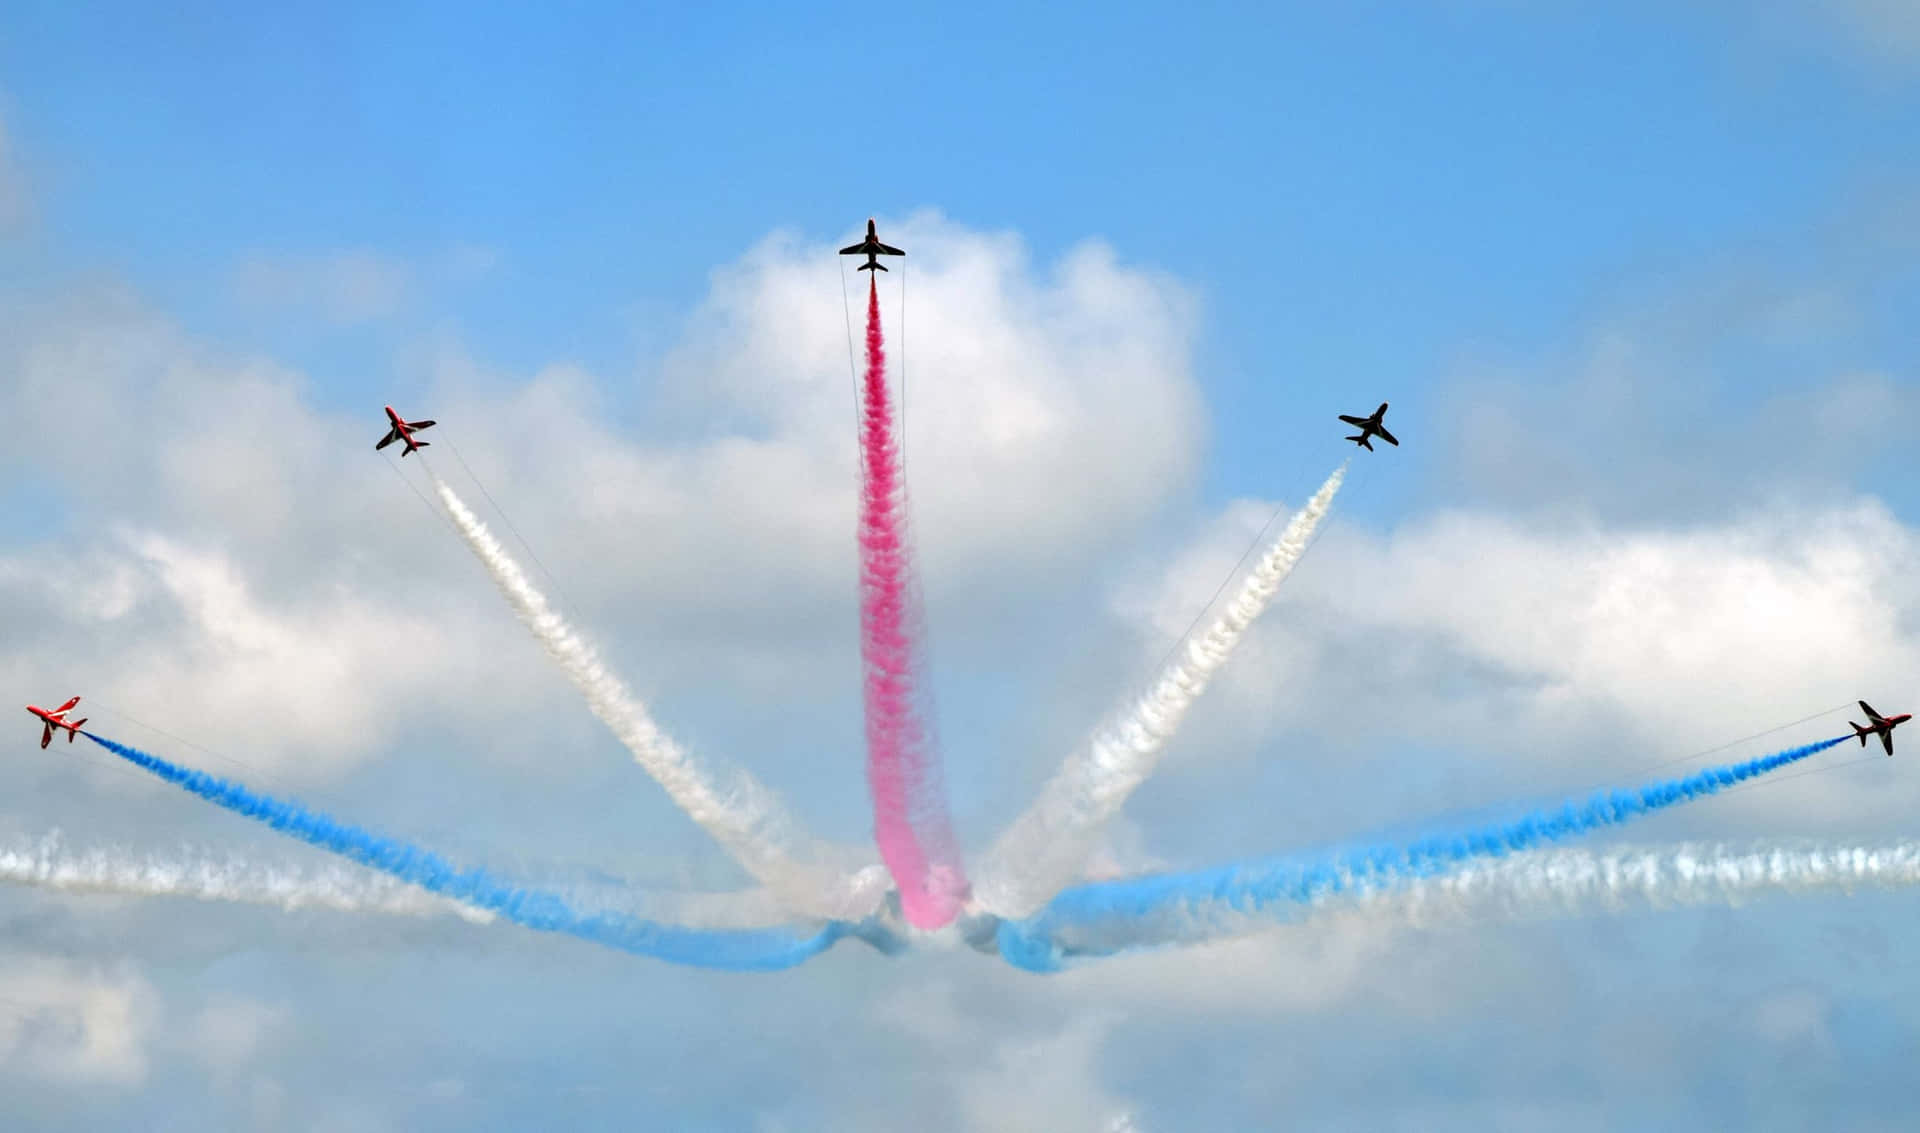 Ungrupo De Aviones Volando En Formación Con Humo Rojo, Azul Y Blanco.